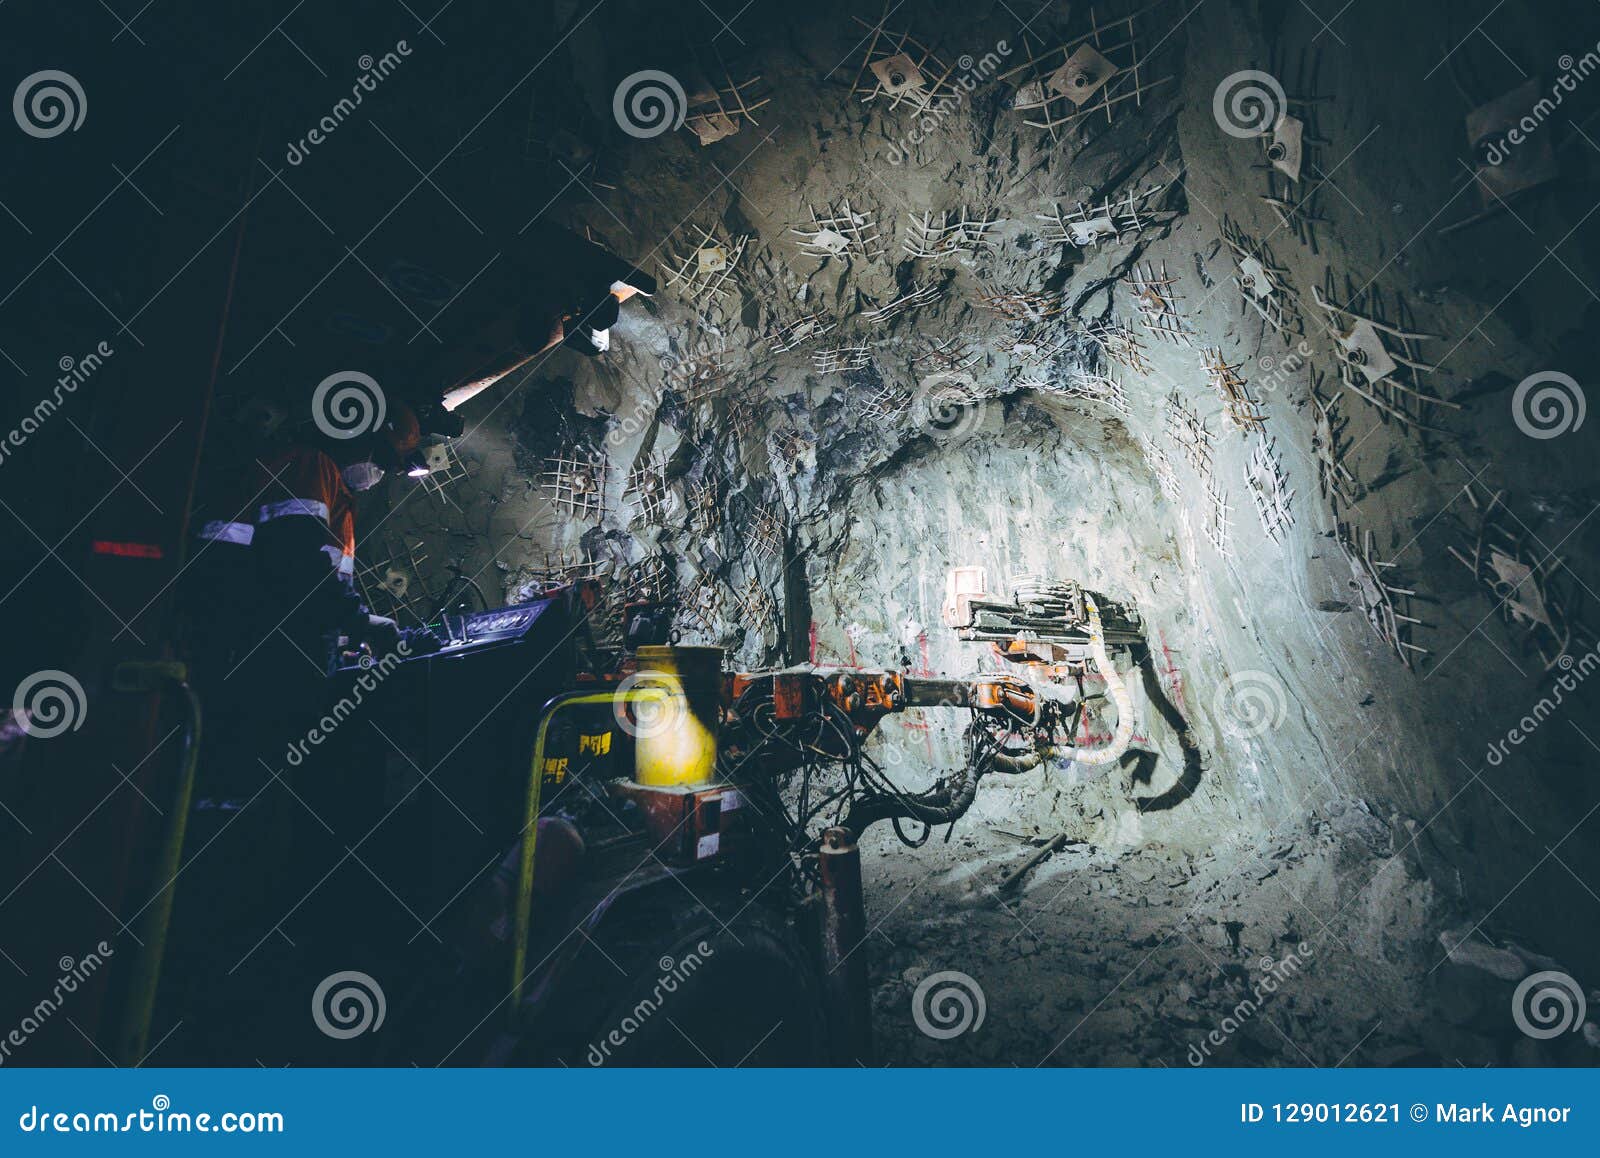 underground mine drilling activity